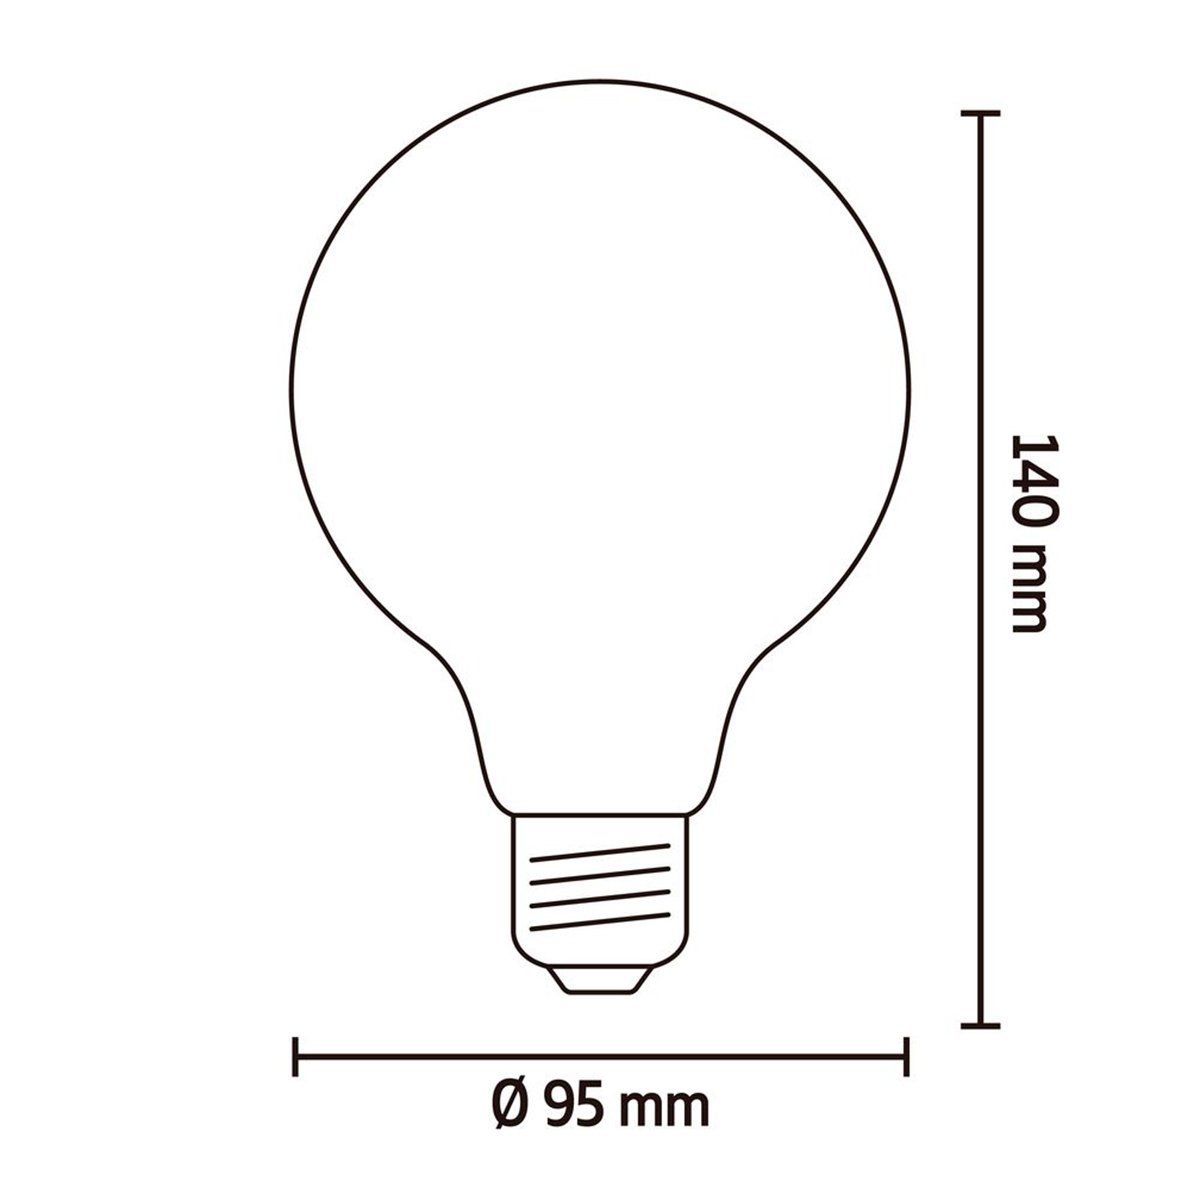 Ampoule LED dimmable E14 SOFTLINE éclairage blanc chaud 4.5W 470 lumens  Ø3.5cm